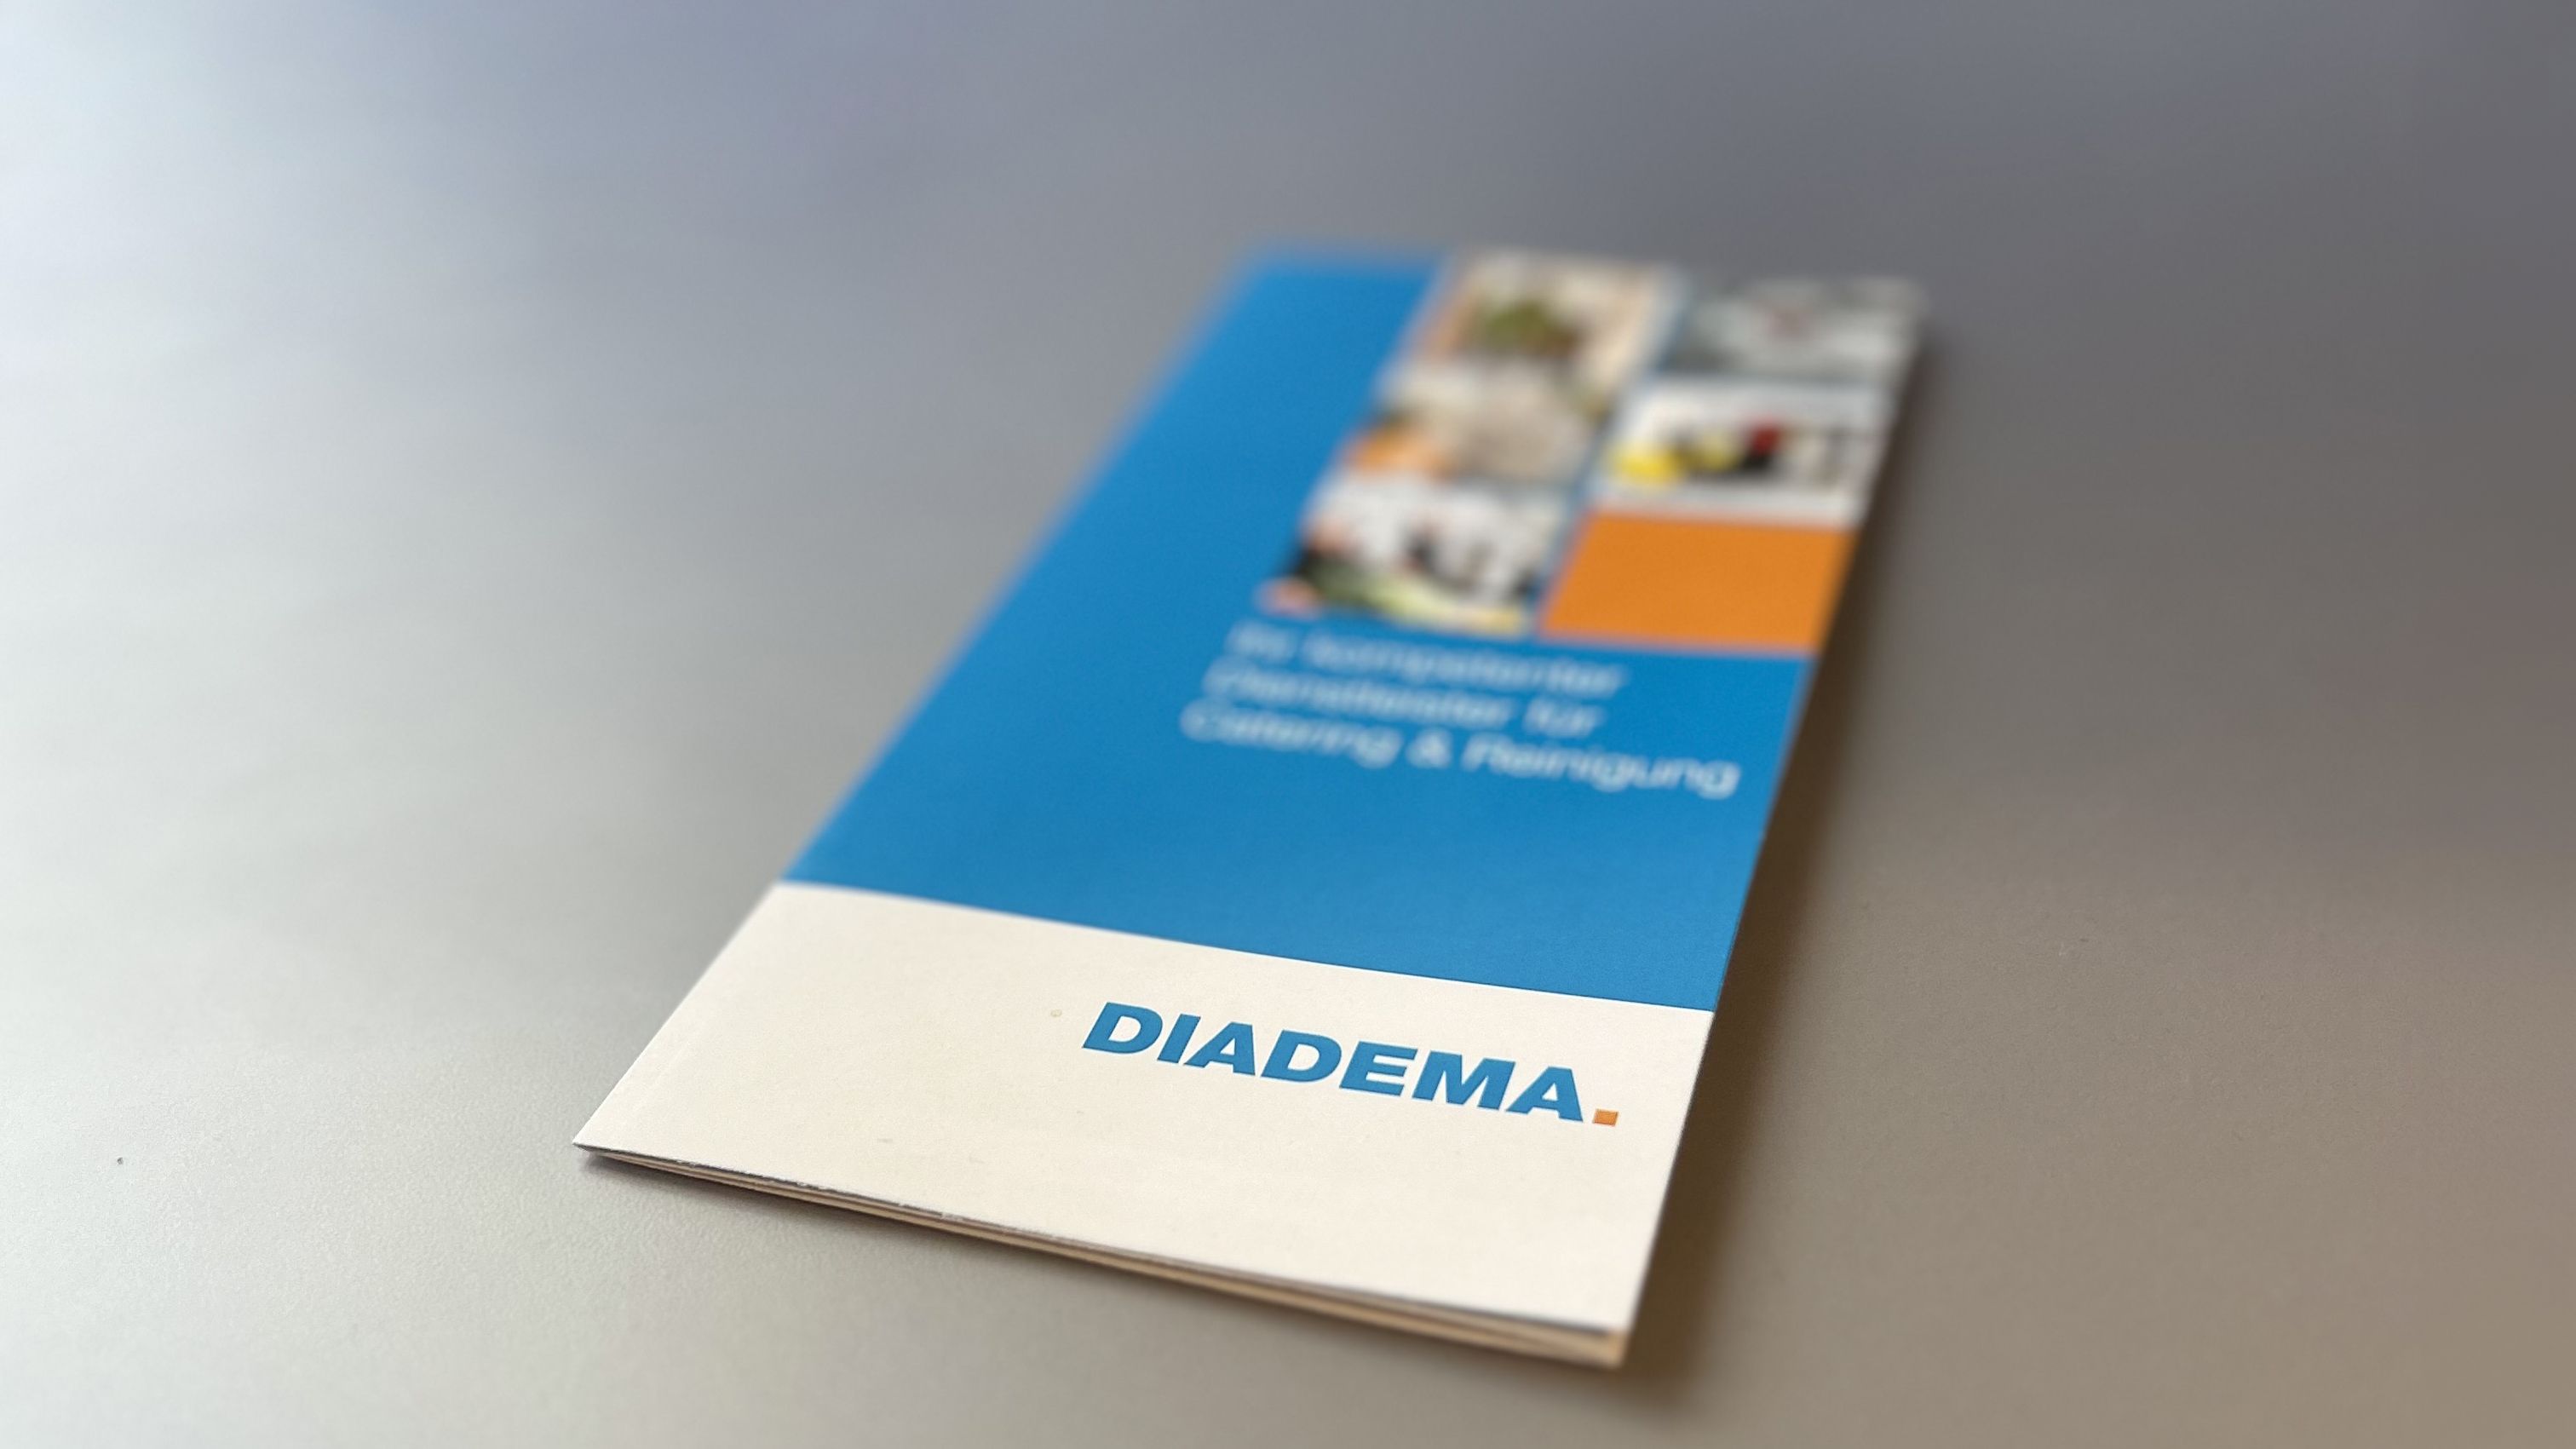 Die Diadema wurde im August 2010 als eigenständige GmbH innerhalb der Diakonie gegründet. Foto: Alexander Goerschel